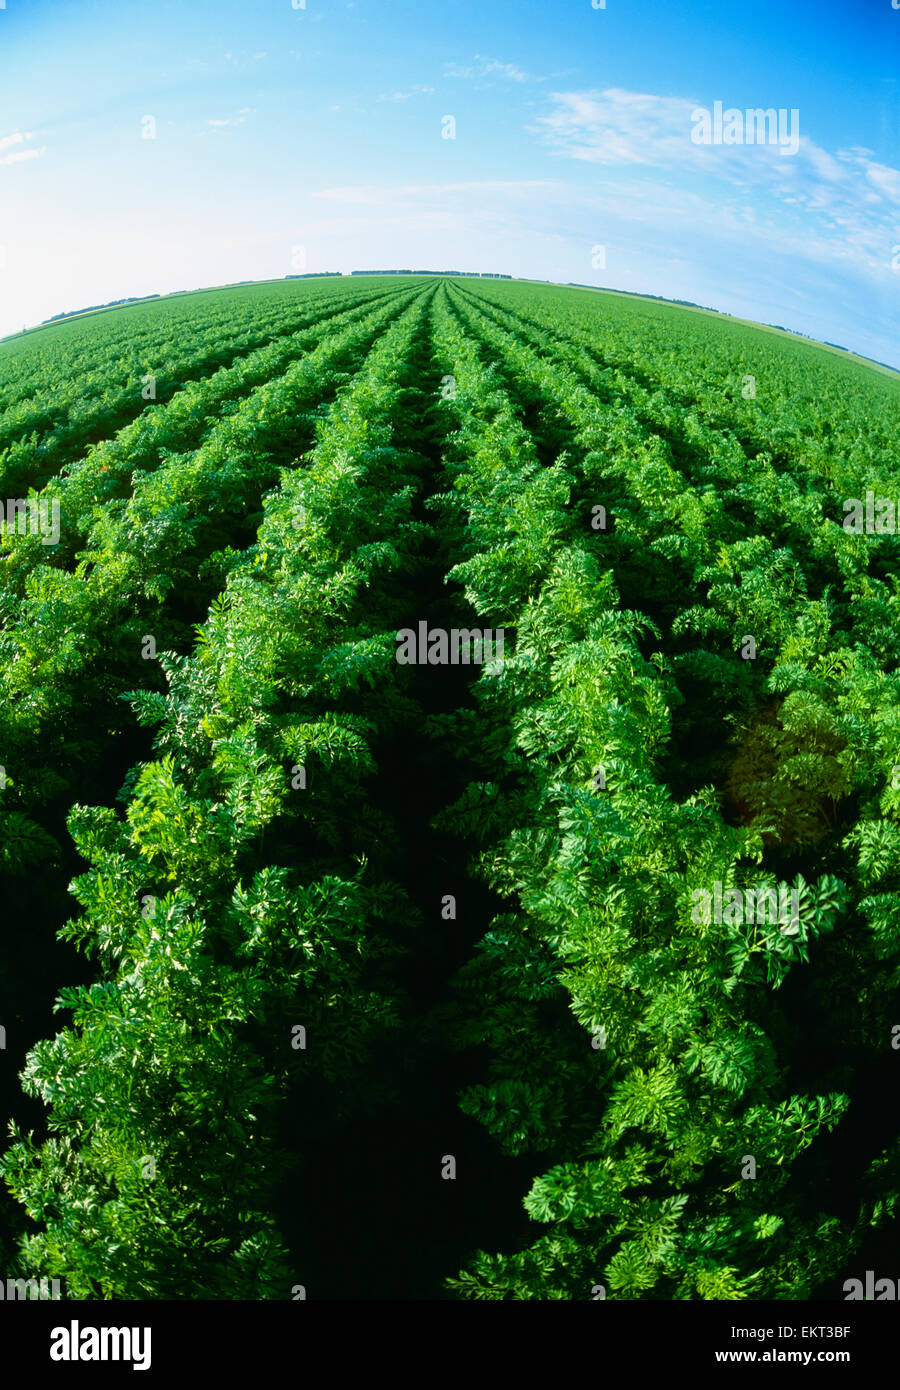 Landwirtschaft - Bereich gesunde Reife Karotten / in der Nähe von Portage la Prairie, Manitoba, Kanada. Stockfoto